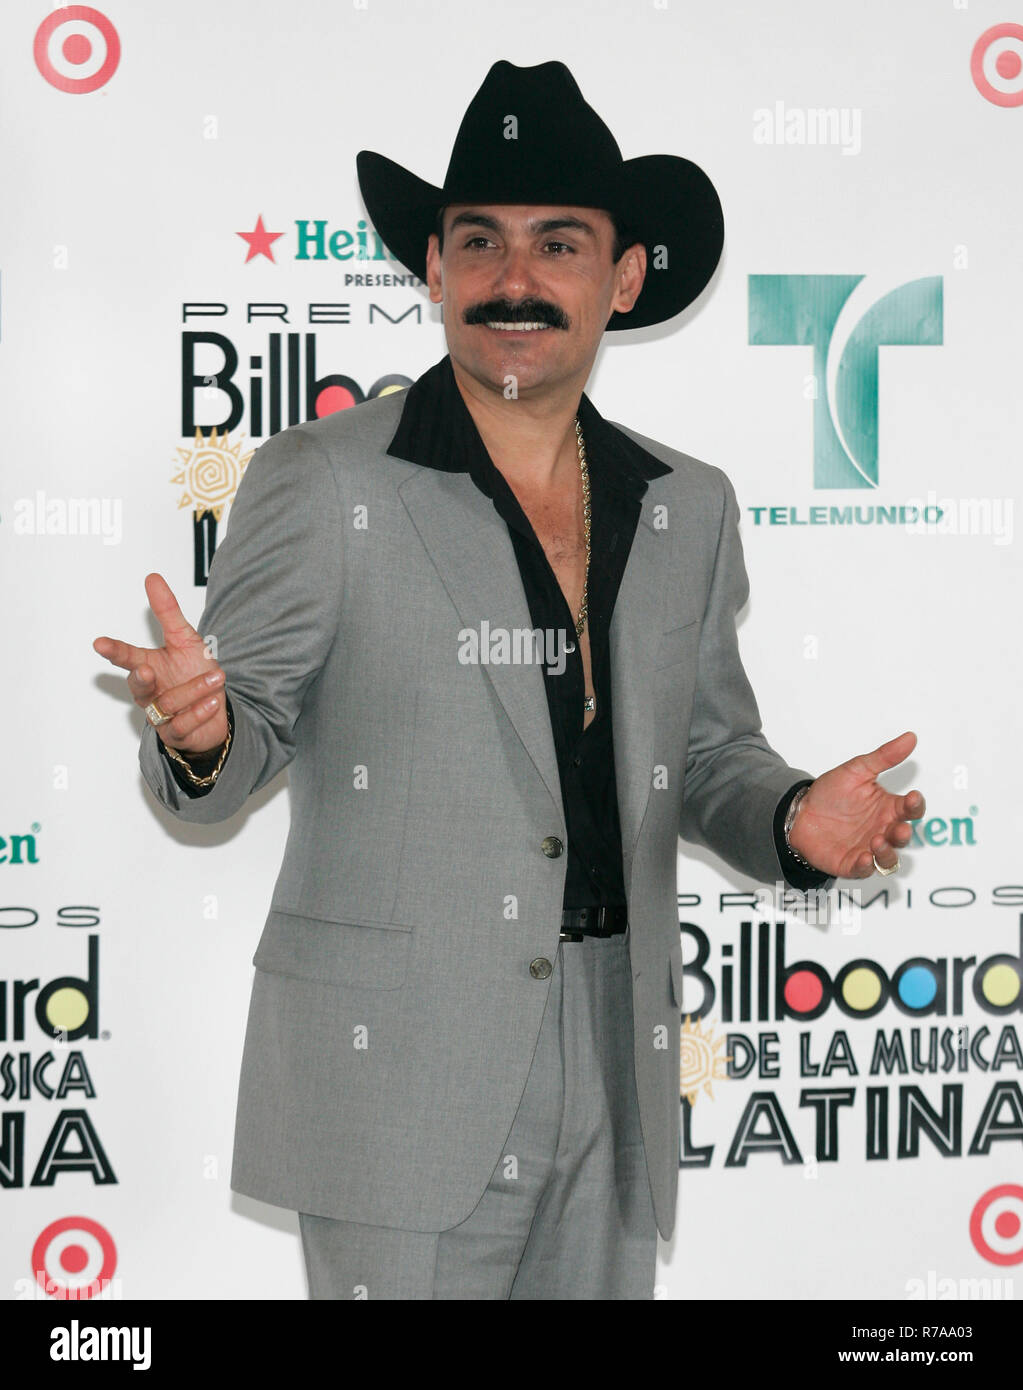 El Chapo de Sinaloa apparaît dans les coulisses du Latin Billboard Awards 2007 au Centre BankUnited à Coral Gables, en Floride, le 26 avril 2007. Banque D'Images